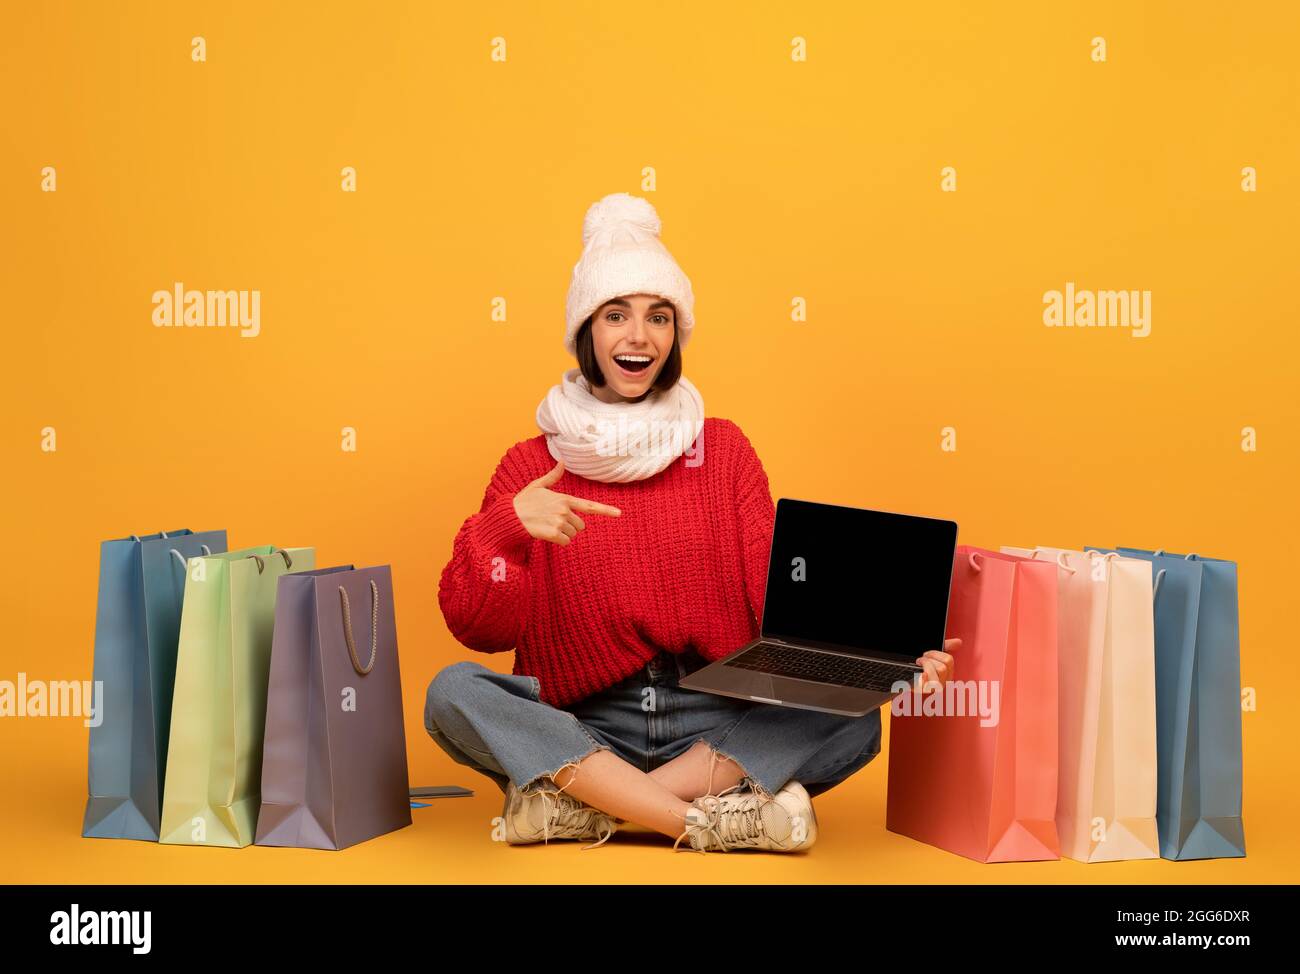 Bonne femme shopaholic en tenue d'hiver pointant à l'écran d'ordinateur portable, assis parmi les sacs de cabas, fond jaune Banque D'Images